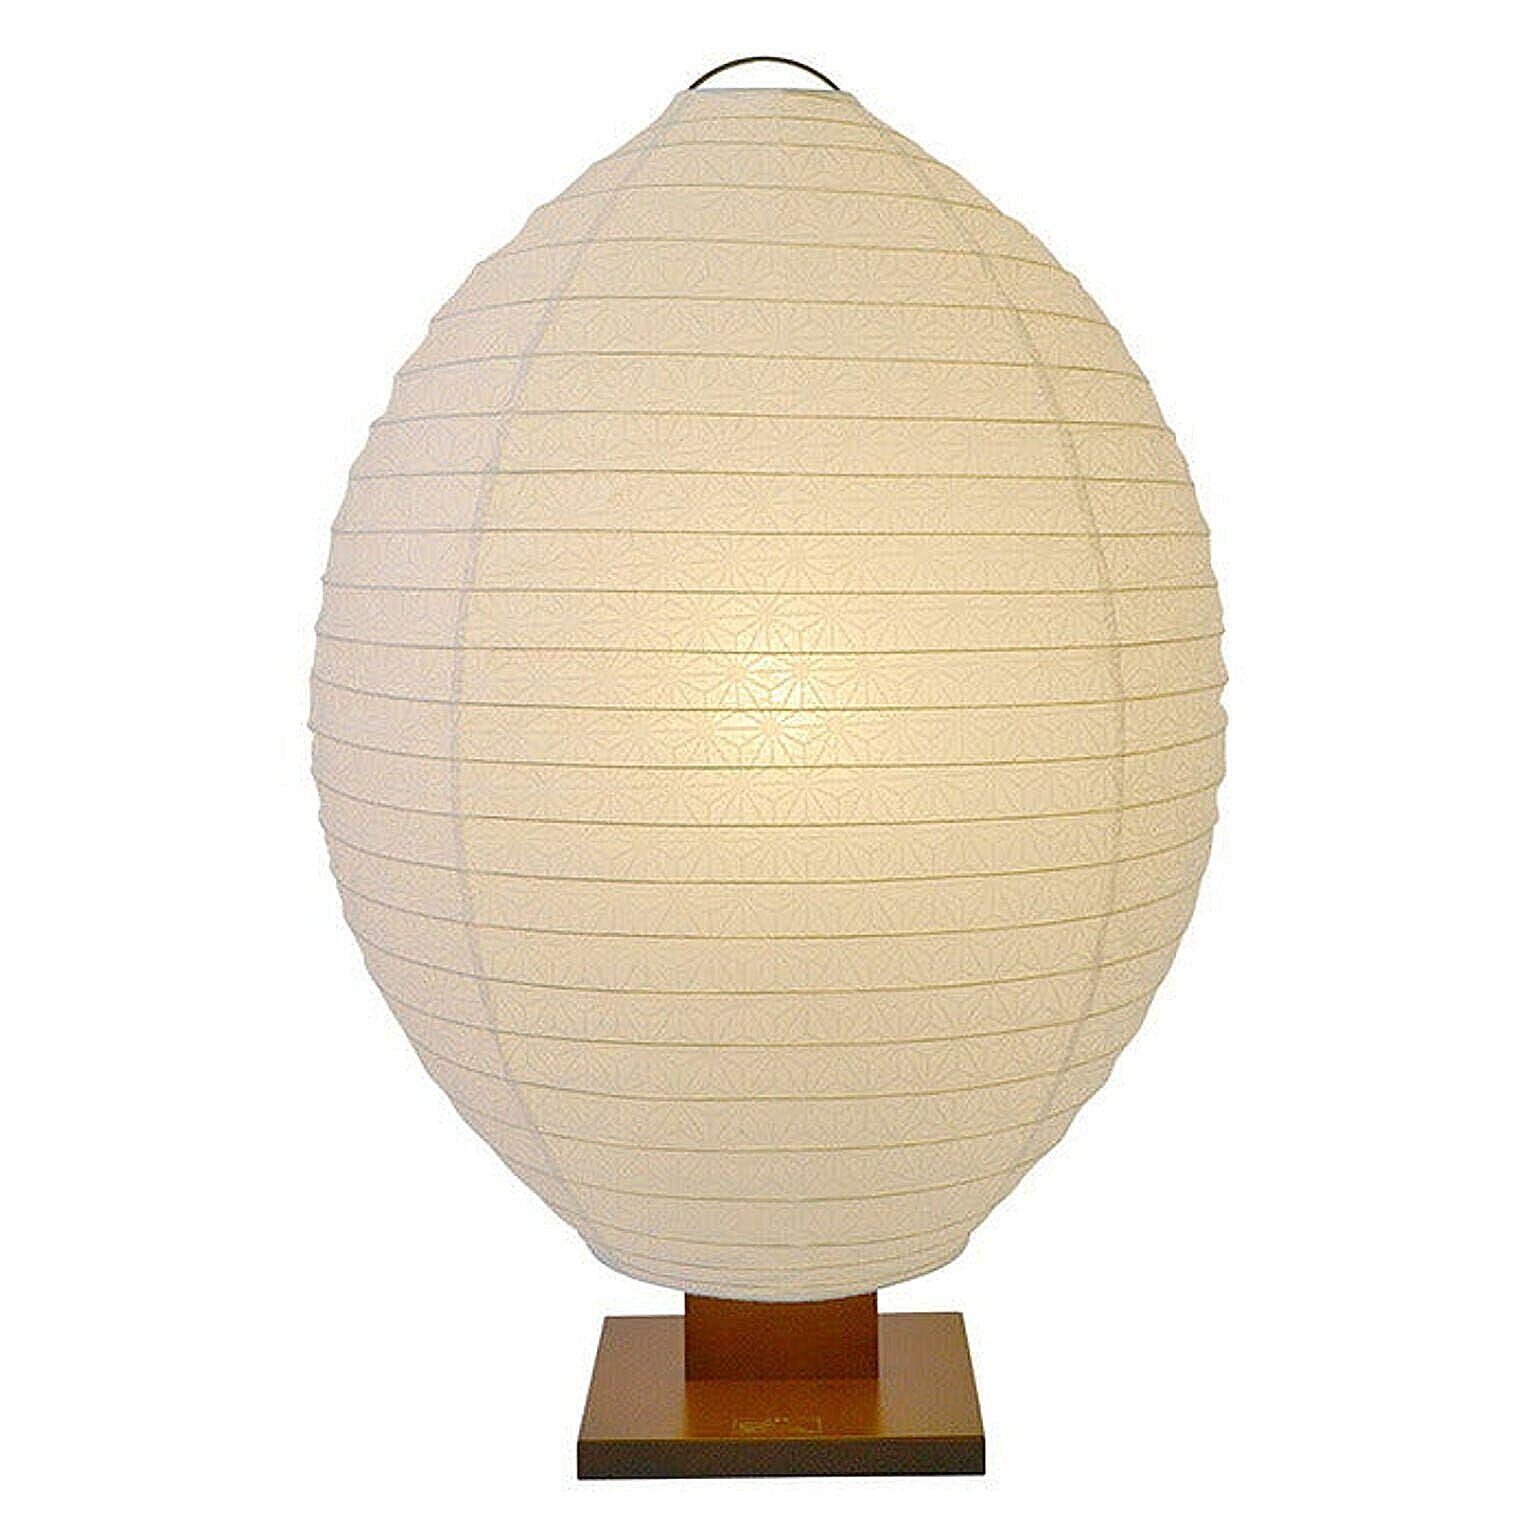 フロアライト 和紙 shell 極み麻葉 電球付属 幅550x奥行350x高さ830mm 彩光デザイン